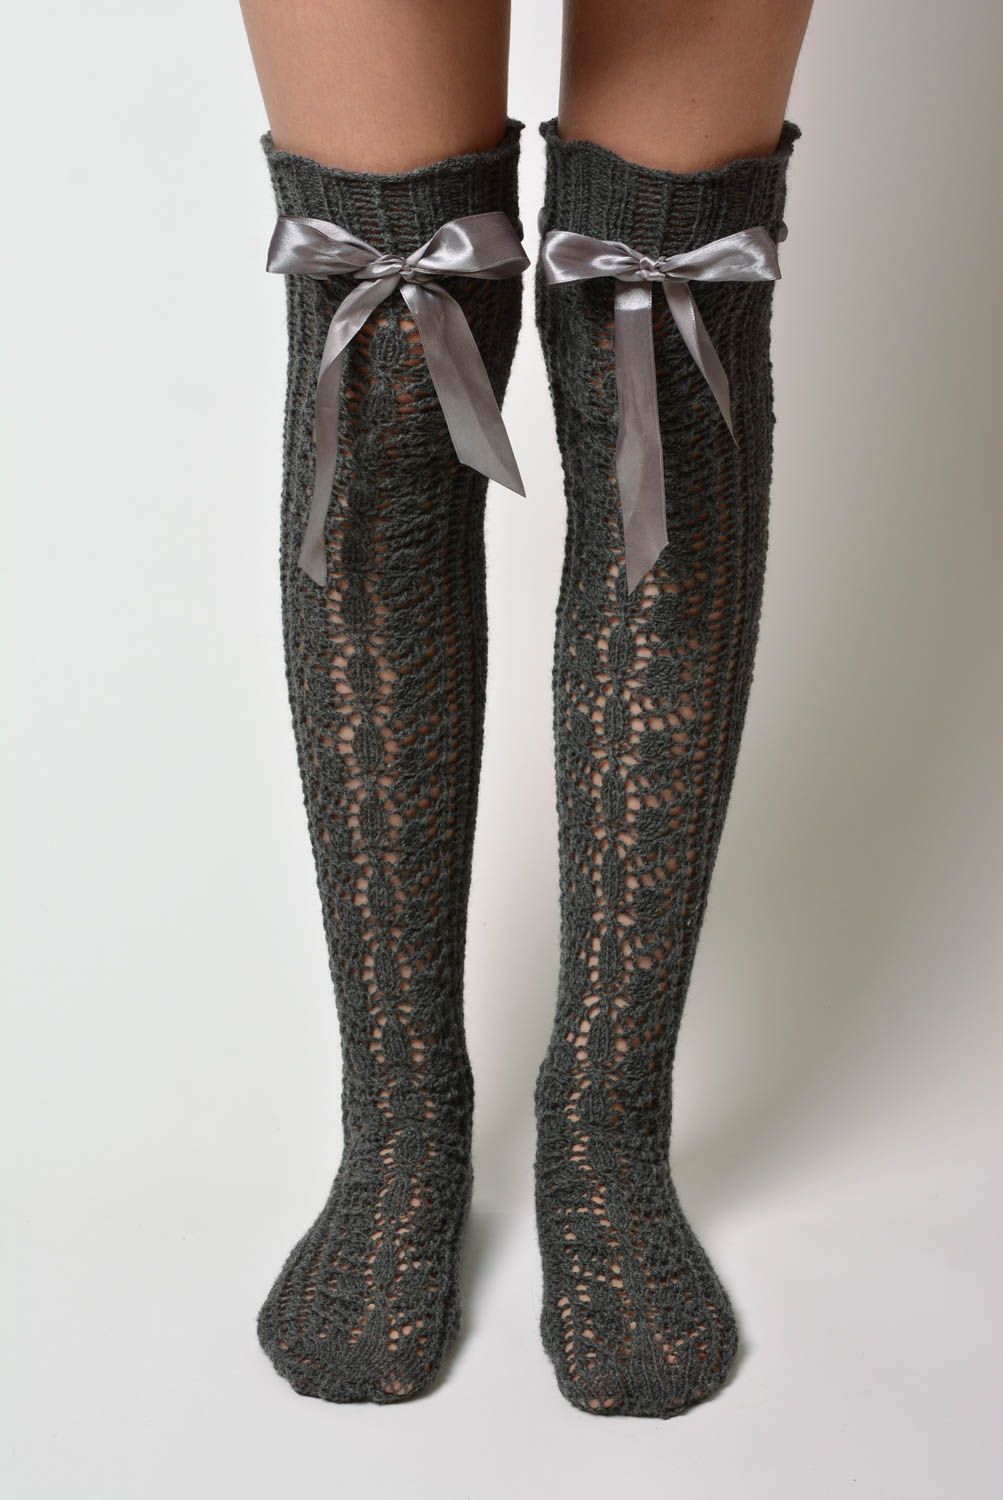 Calcetines femeninos largos de rodilla artesanales tejidos a dos agujas de lana foto 1